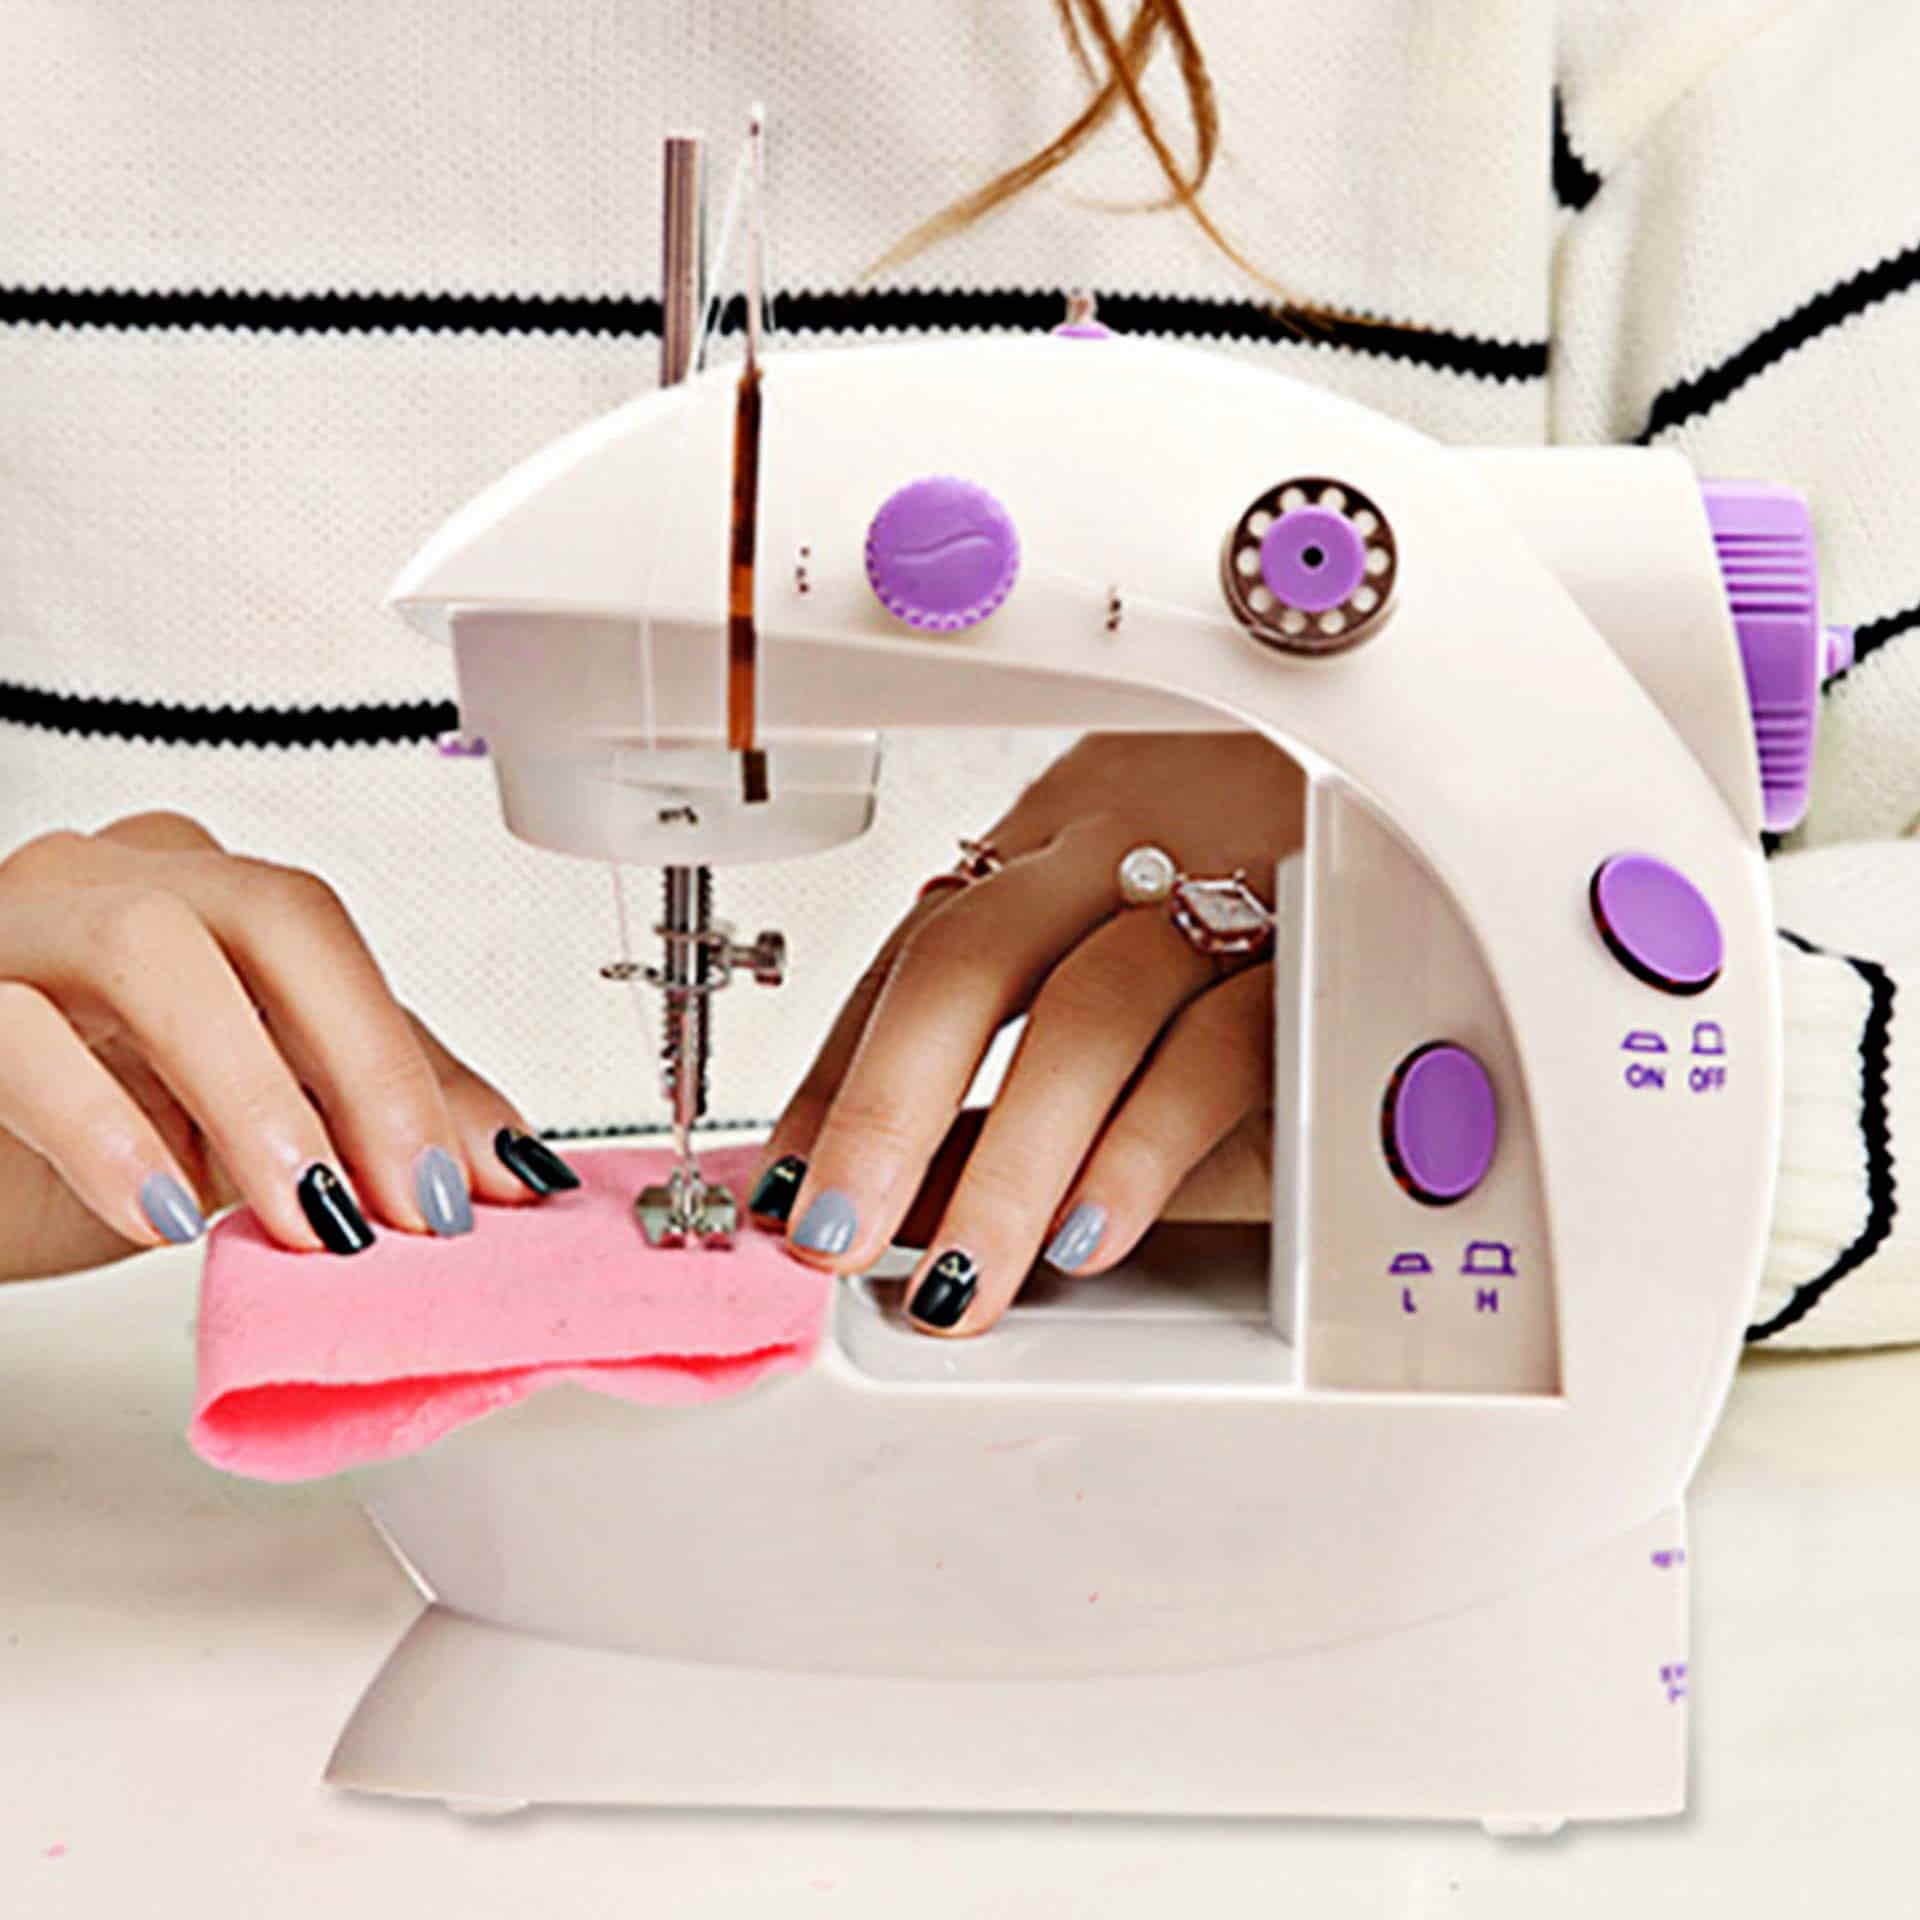 Dónde comprar mejor mini máquina de coser españa